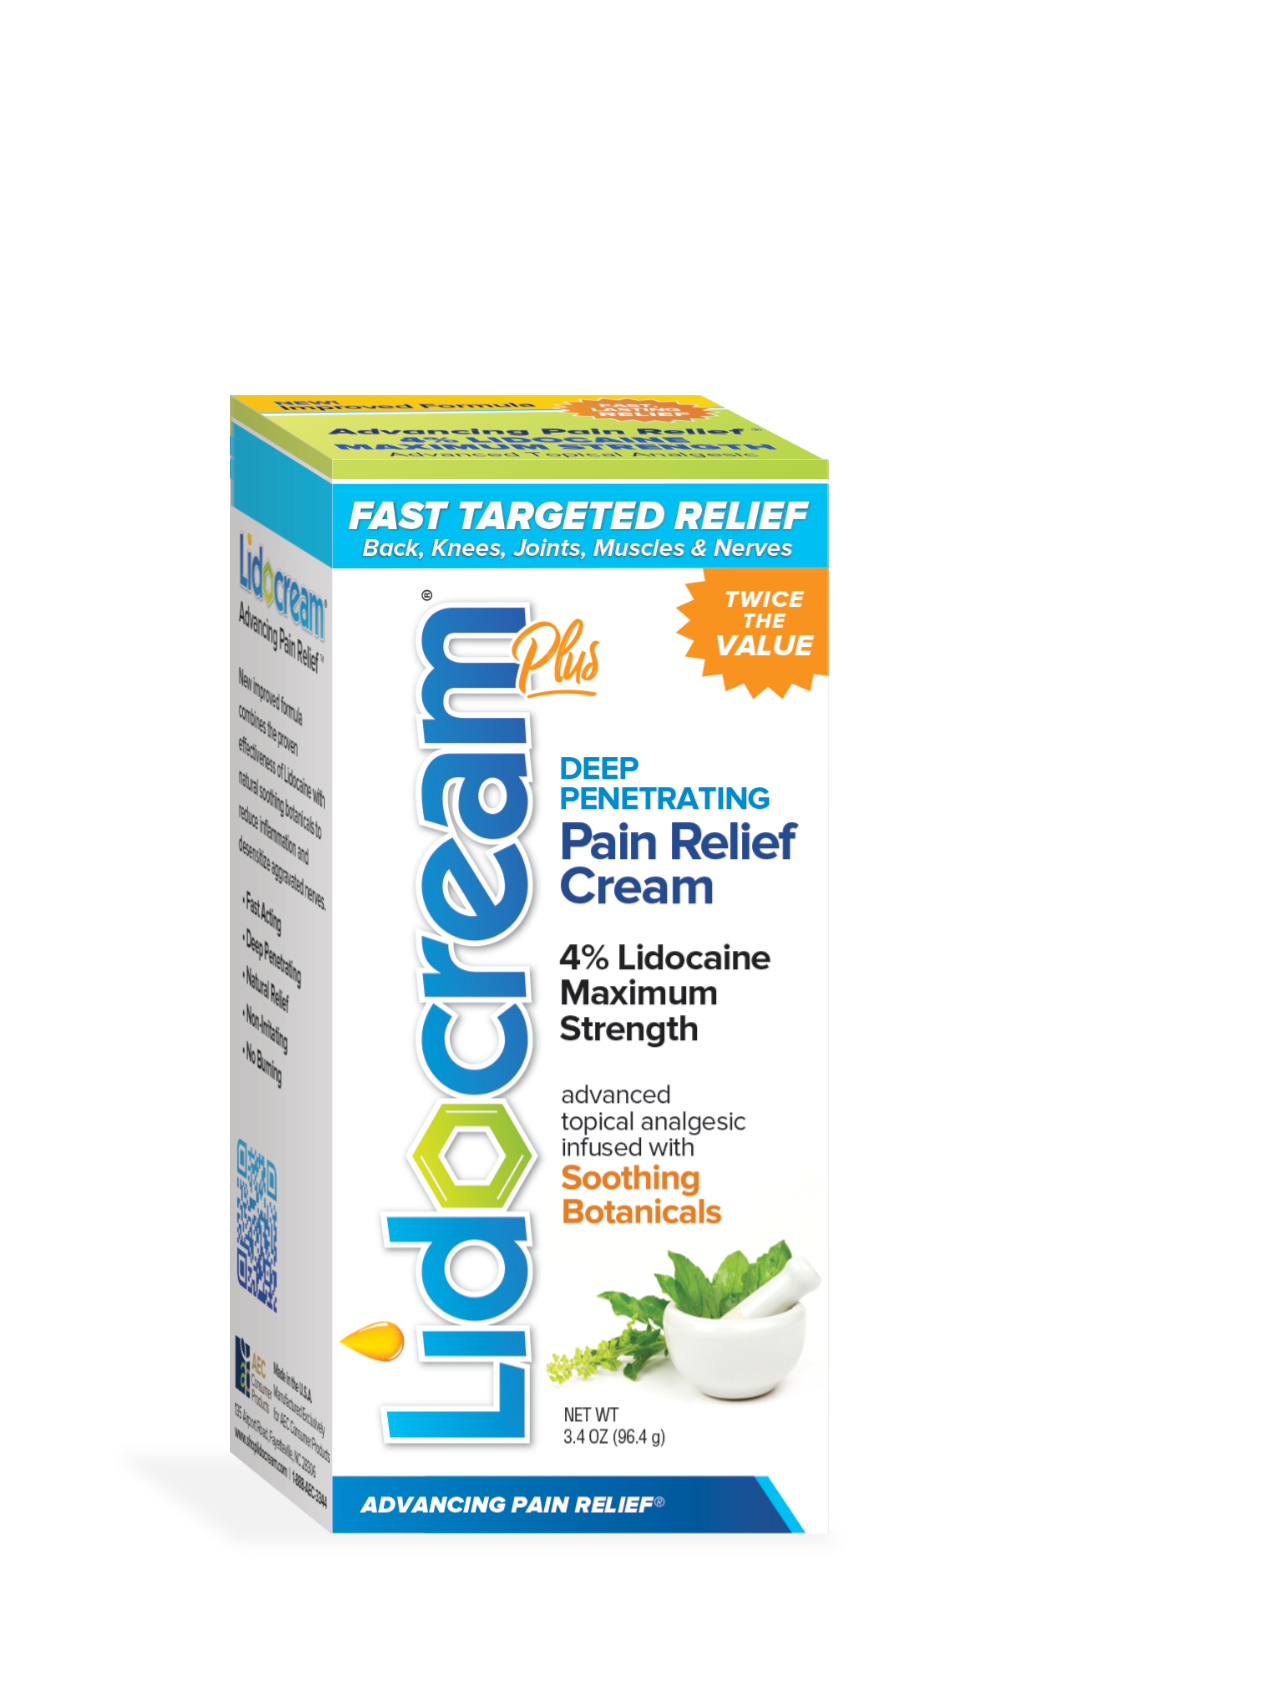 Lidocream Plus® Maximum Strength Pain Relief Cream - Buy 3, Get 1 FREE!!!